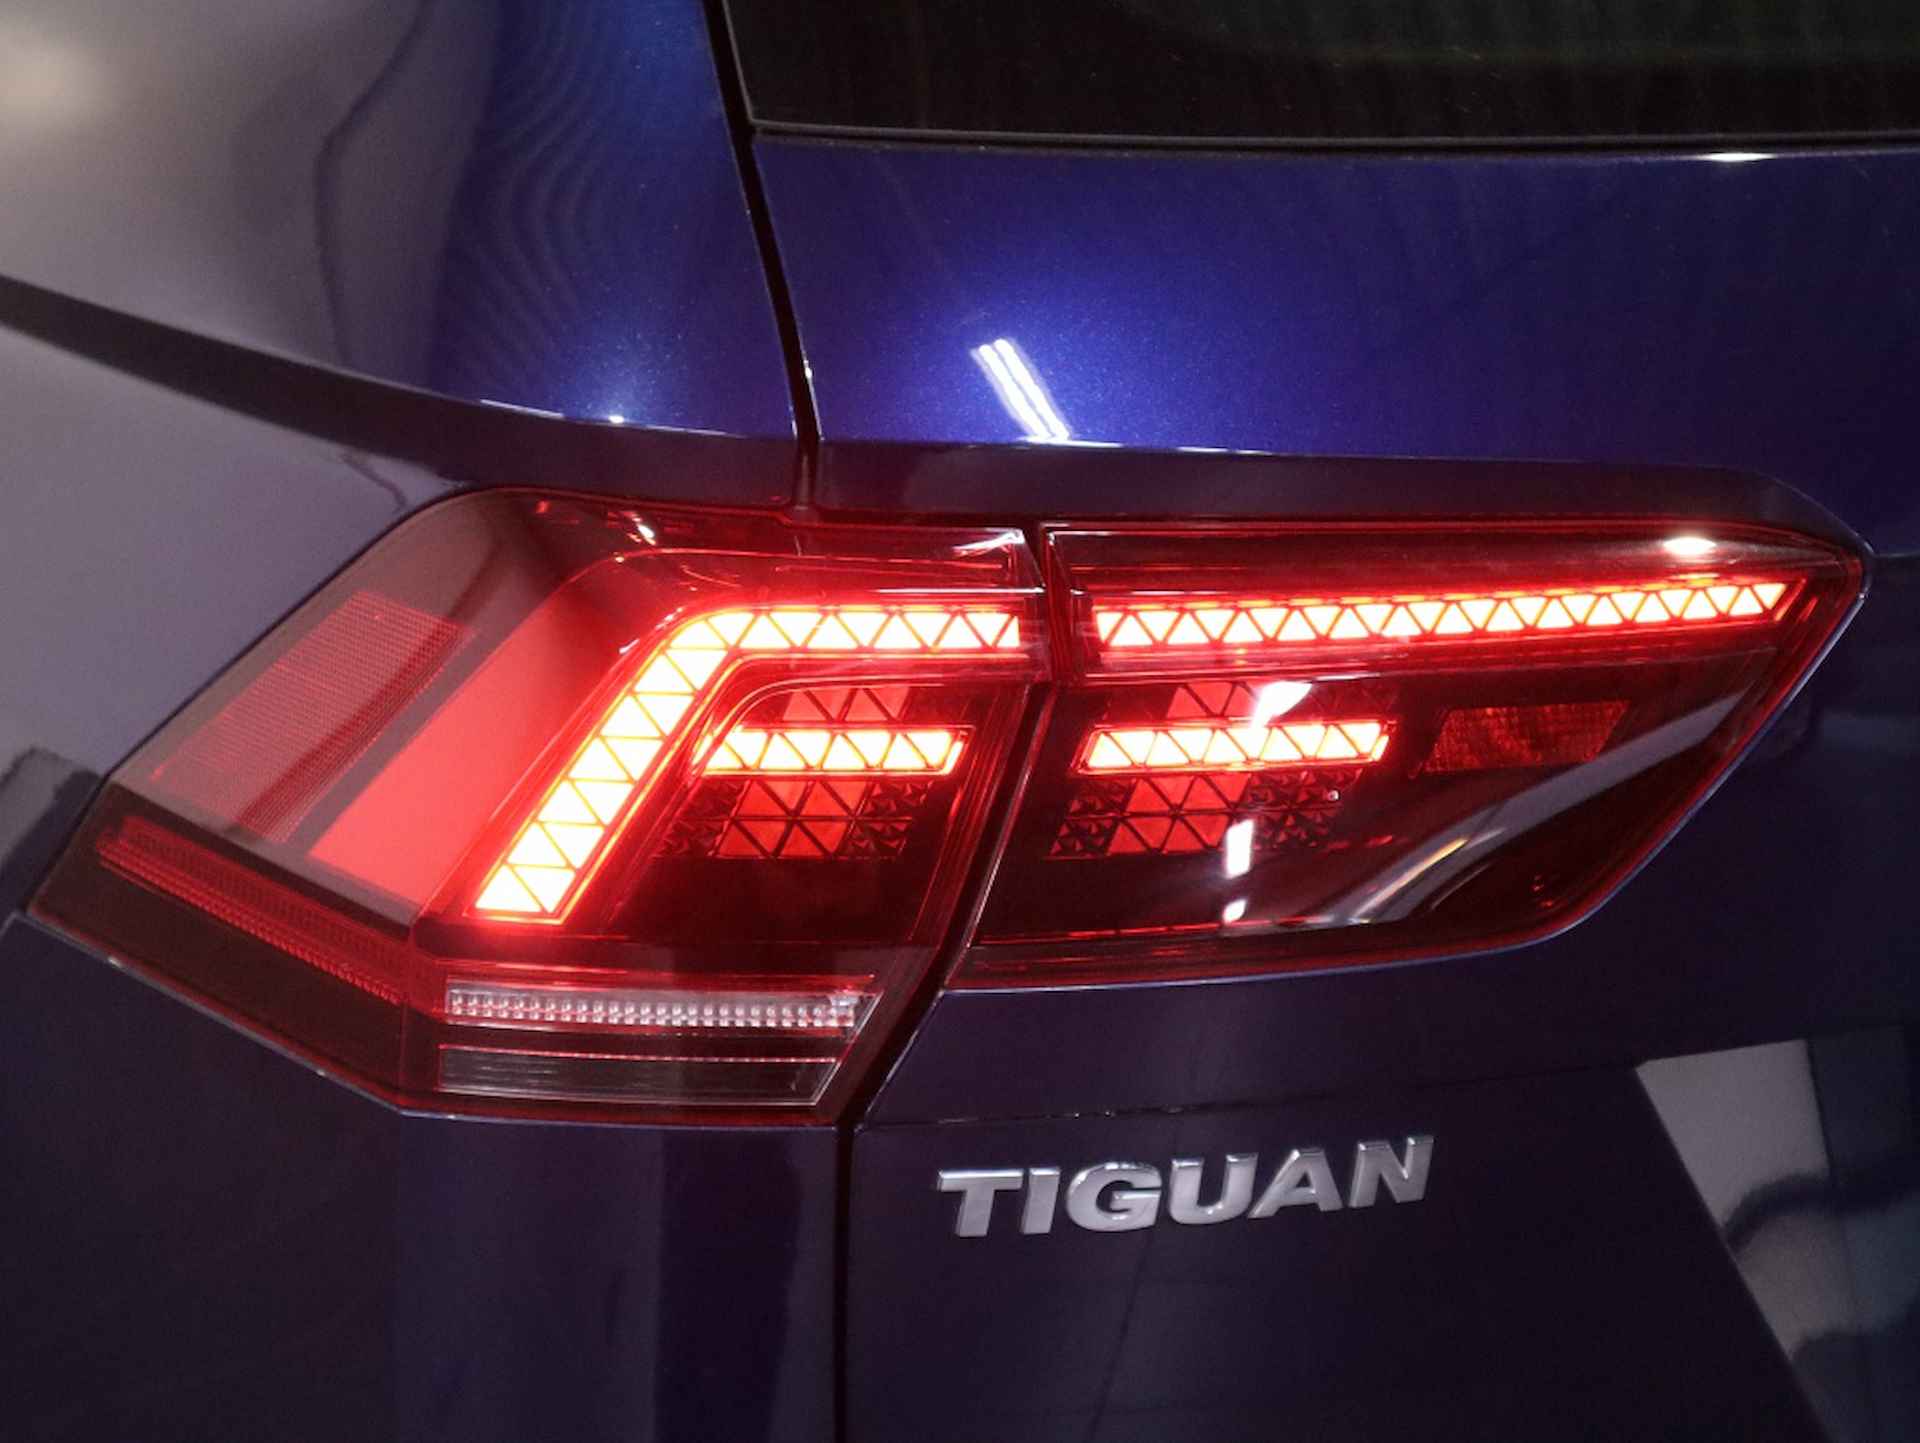 Volkswagen Tiguan 1.4 TSI ACT Con. Ser / Trekhaak / Cruise control / Navigatie - 8/37